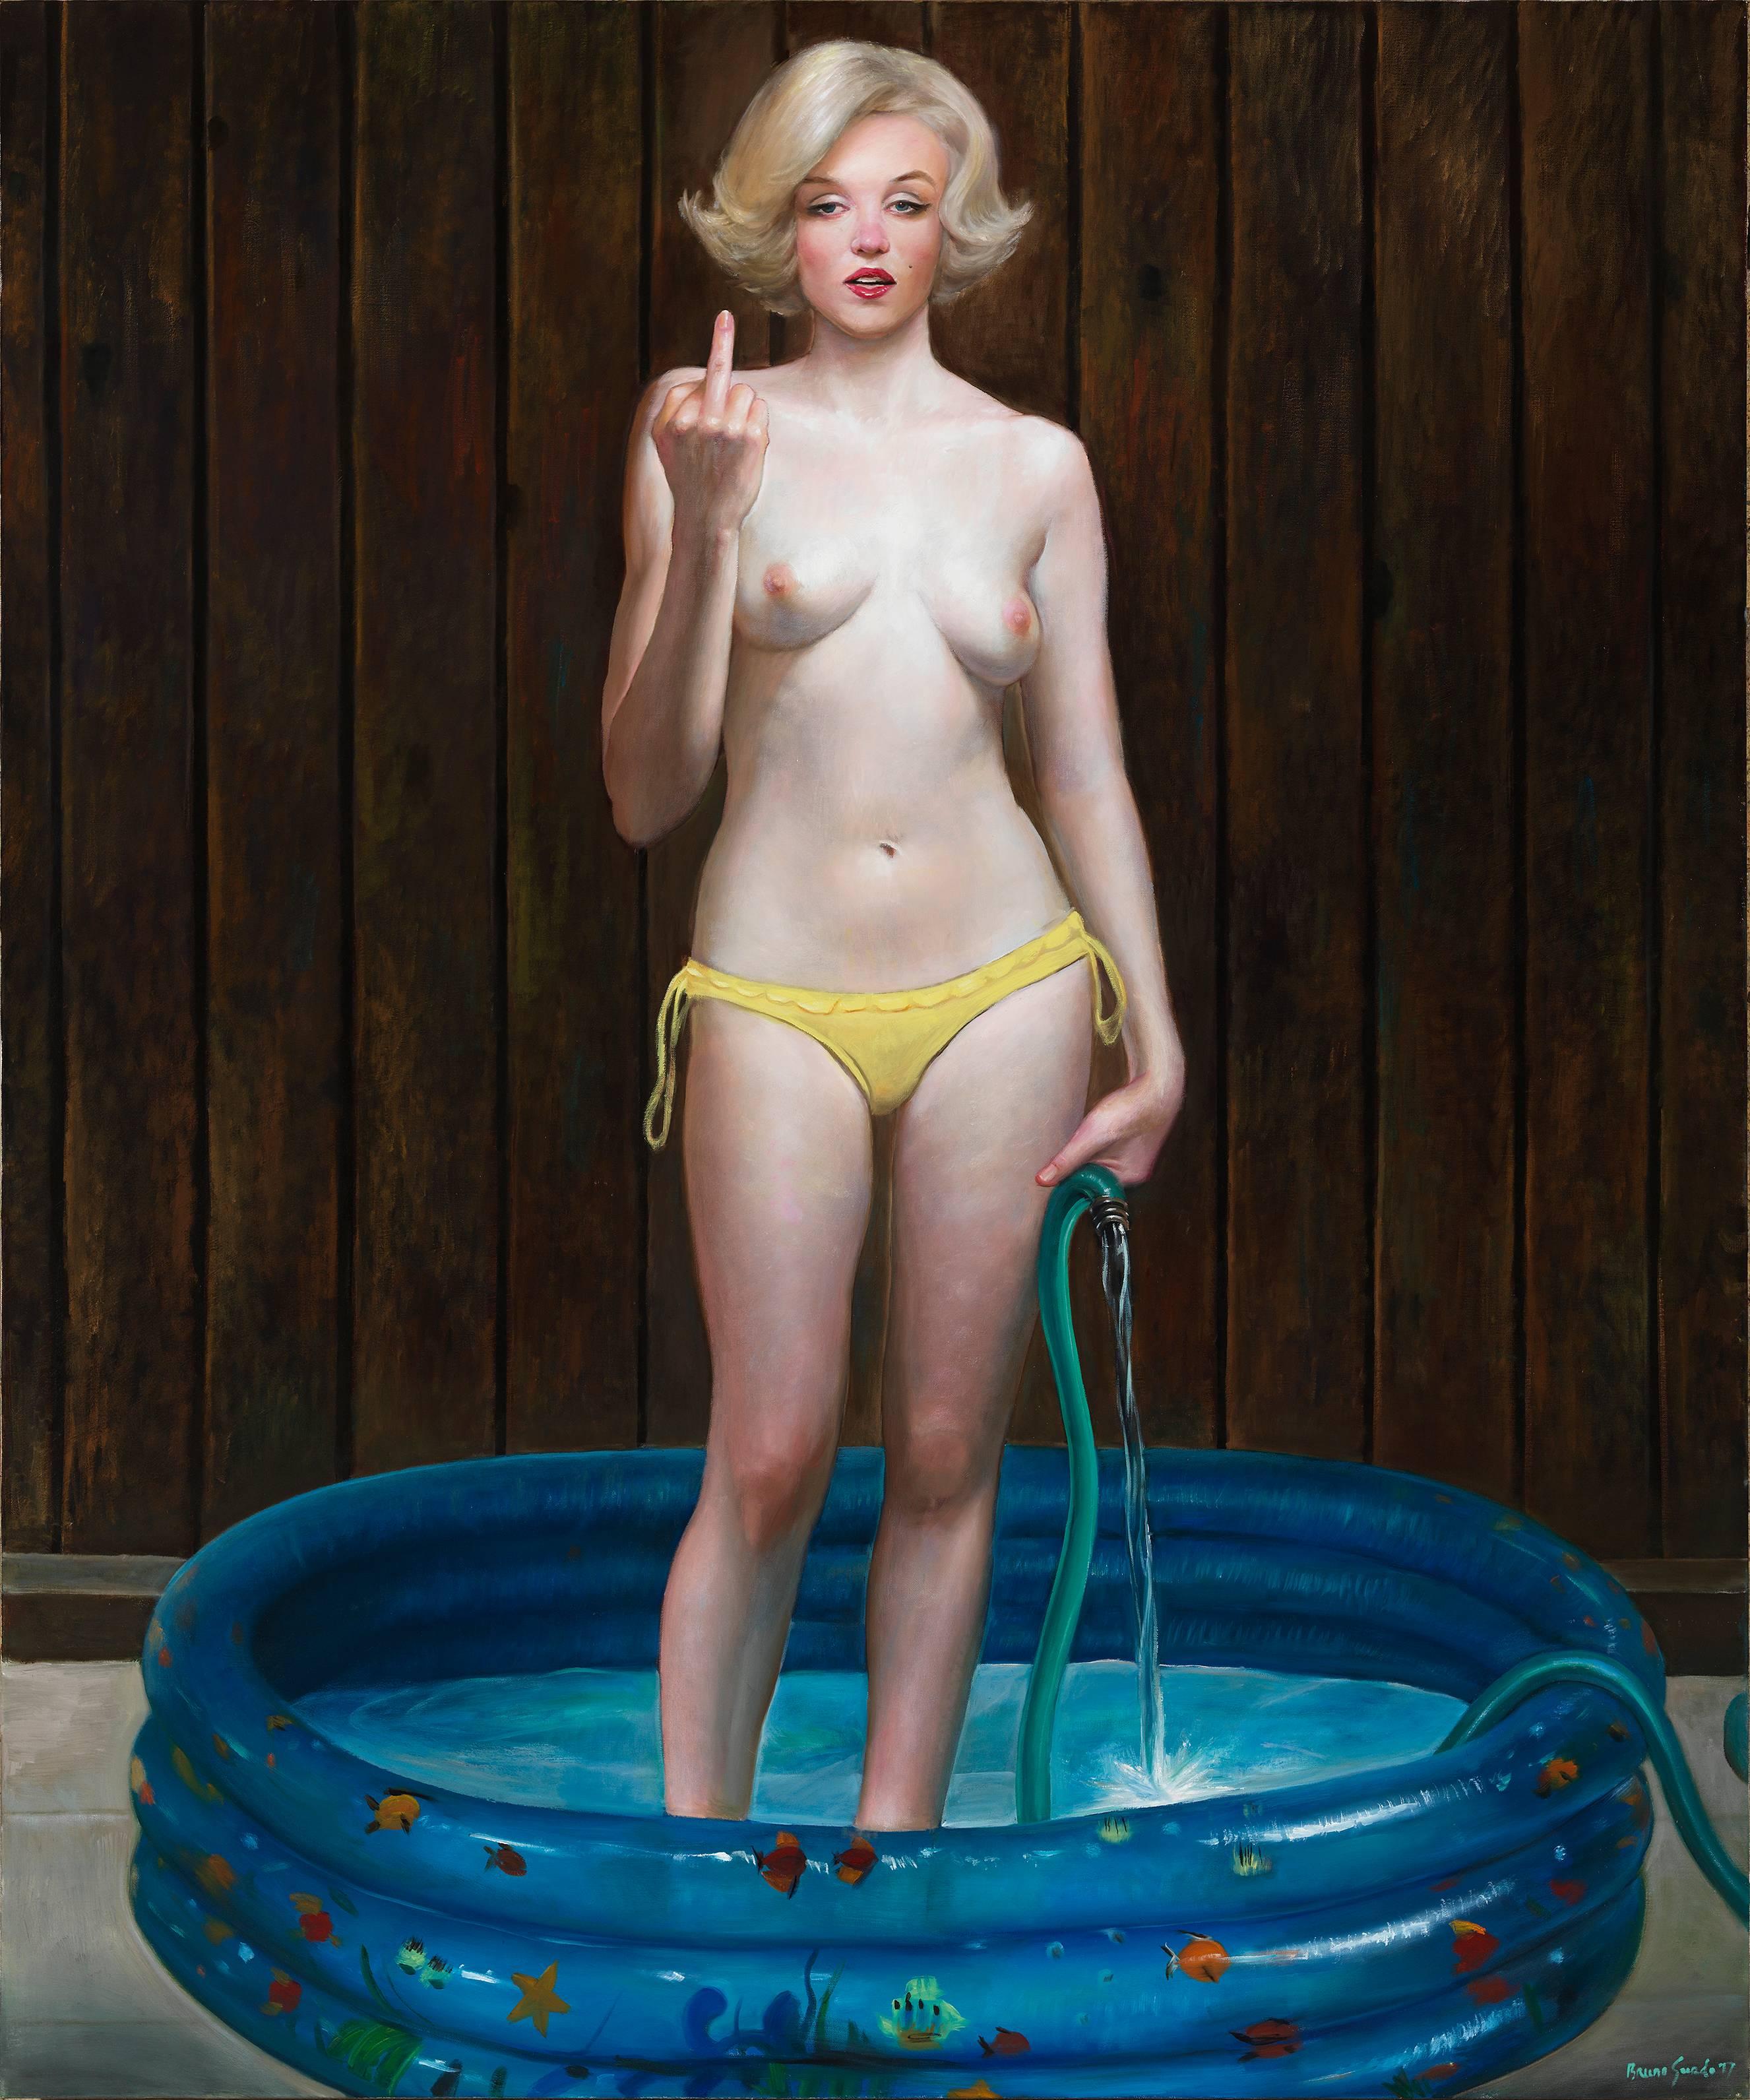 Bruno Surdo Nude Painting – Get Out! - Großes Ölgemälde von Marilyn Monroe:: die in einem Kiddie-Pool steht